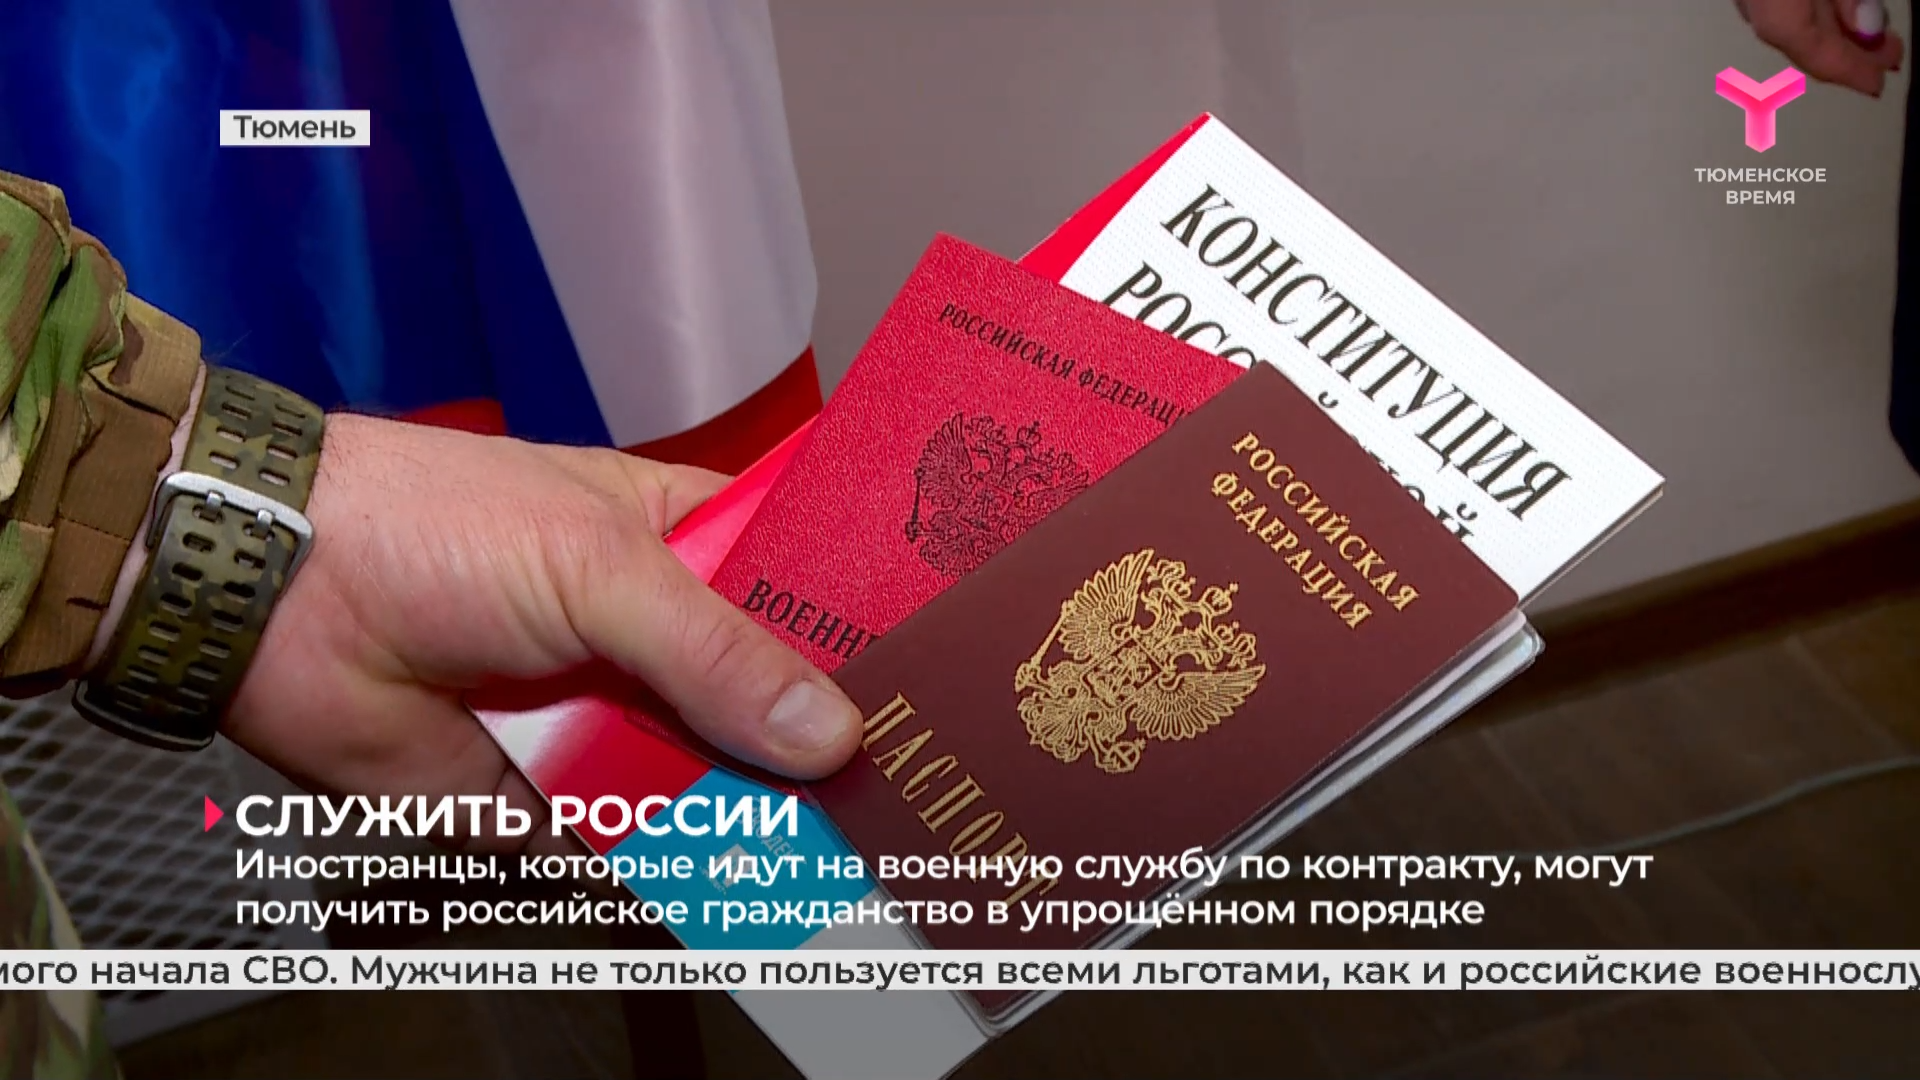 Иностранцы, которые идут на военную службу по контракту, могут получить российское гражданство